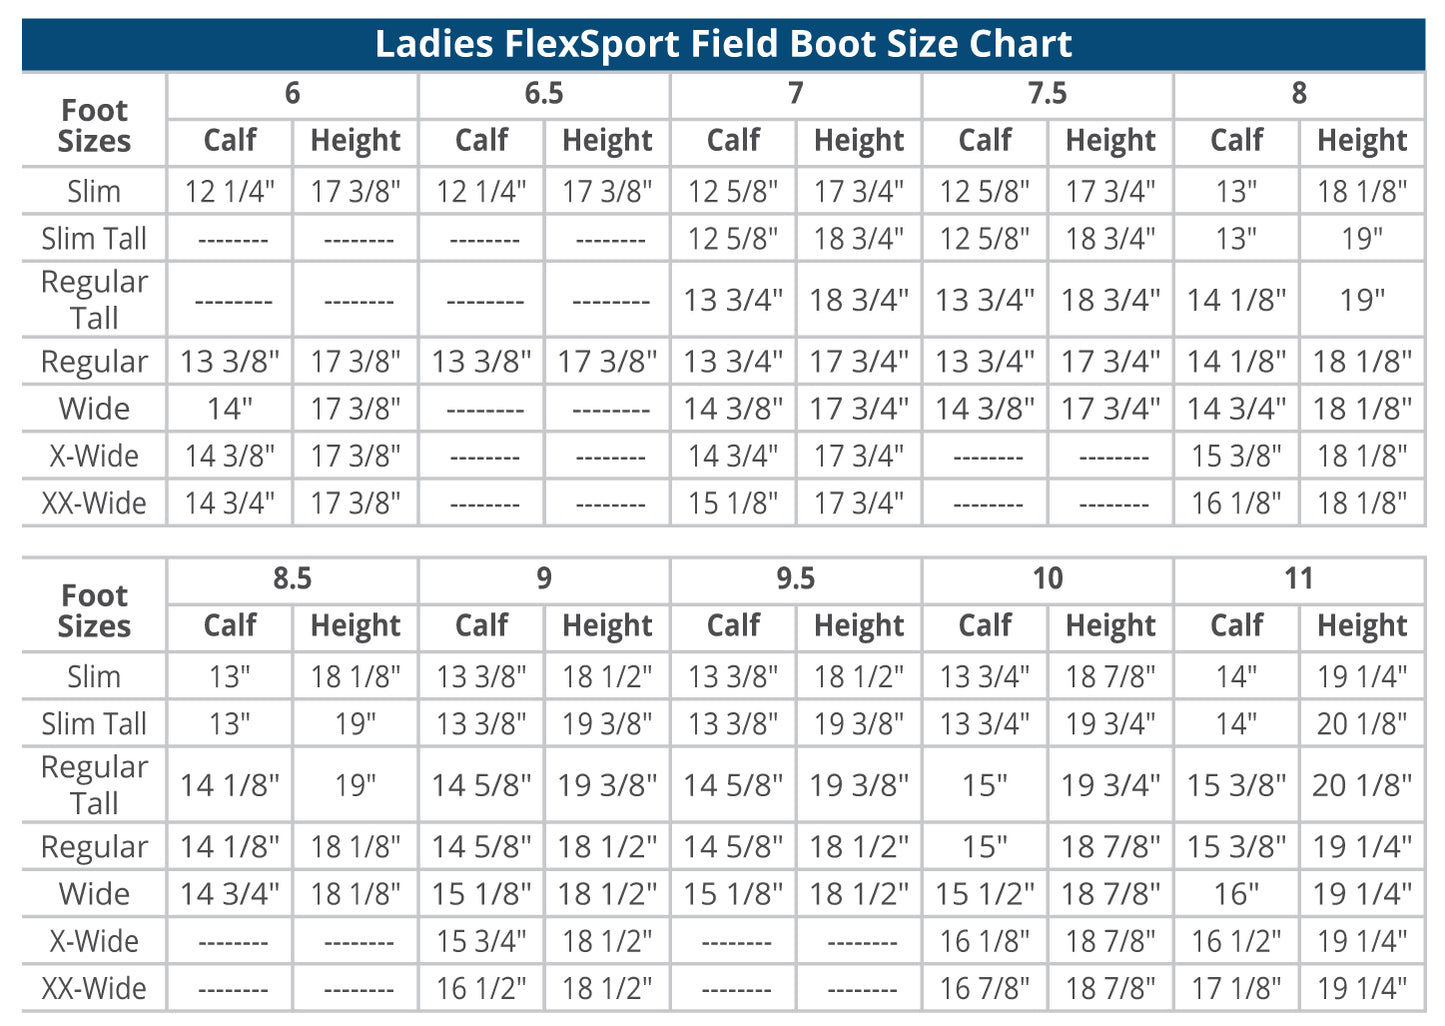 Ladies' Flex Sport Field Boot